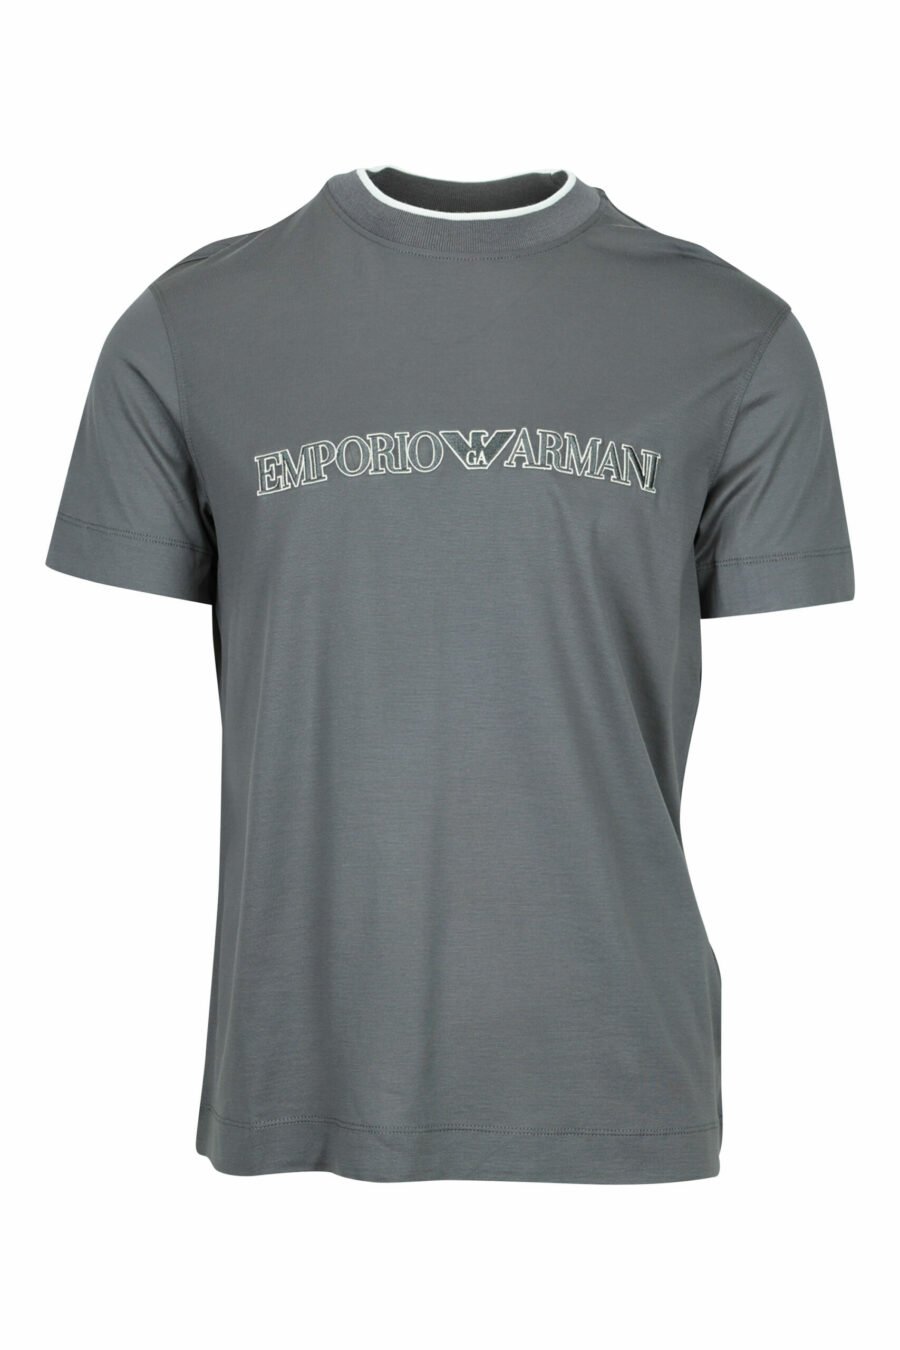 Tee-shirt gris avec maxilogo "emporio" - 8058947987238 échelonné